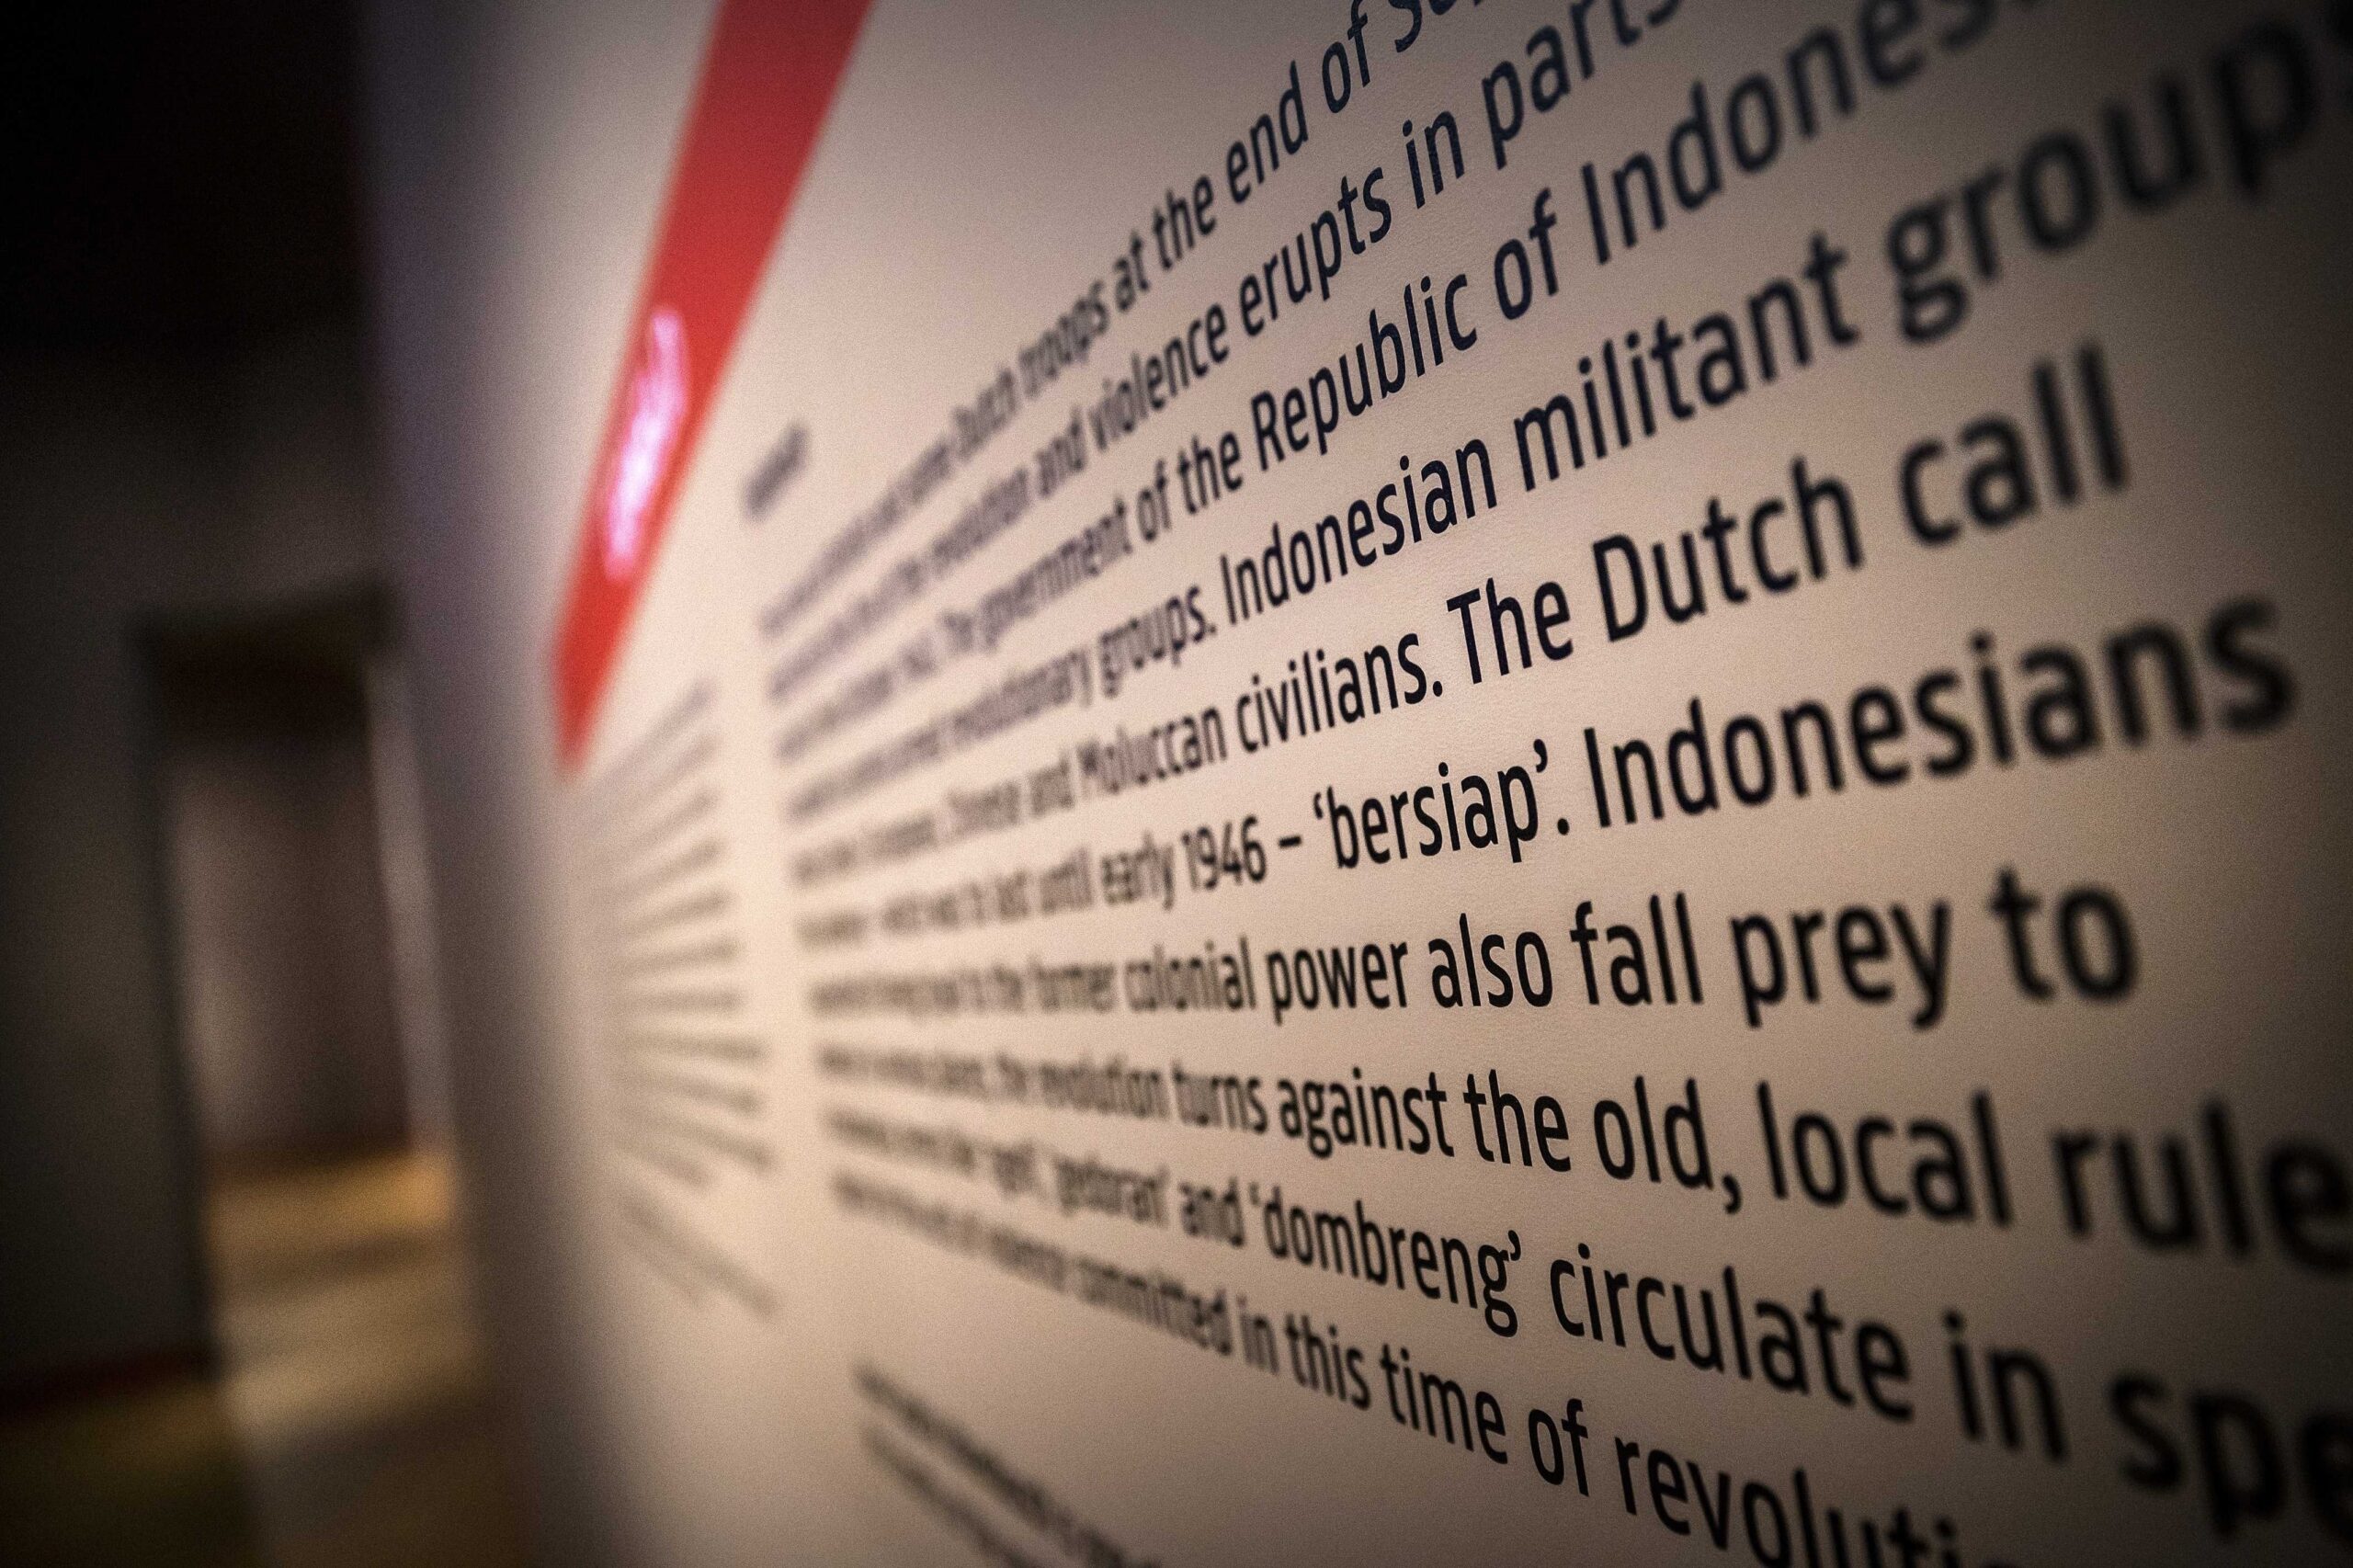 Países Bajos utilizó una violencia “sistemática y extrema”  durante la independencia de Indonesia